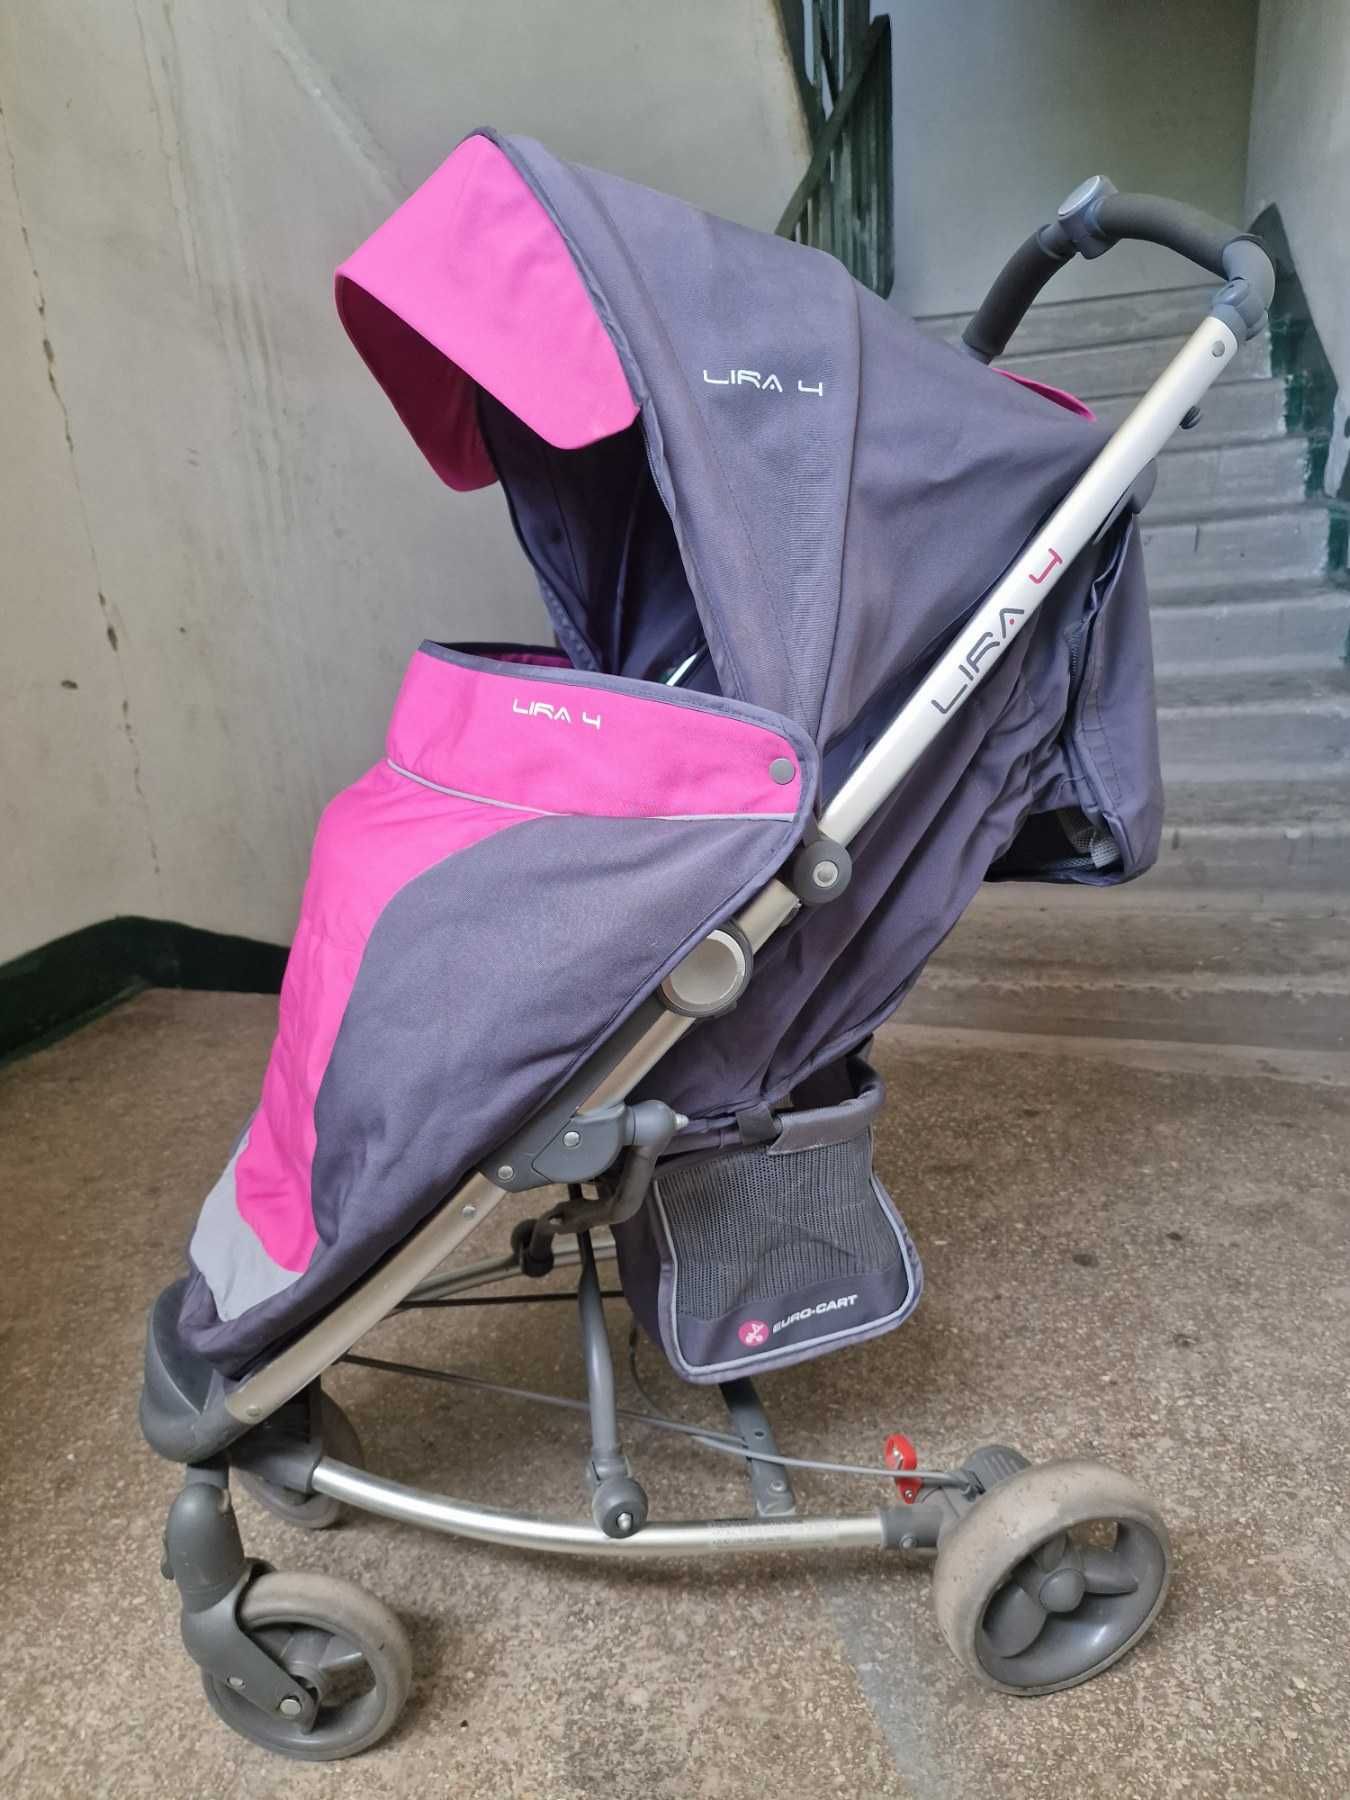 Продается прогулочная детская коляска EURO - CART LIRA 4 CARBON